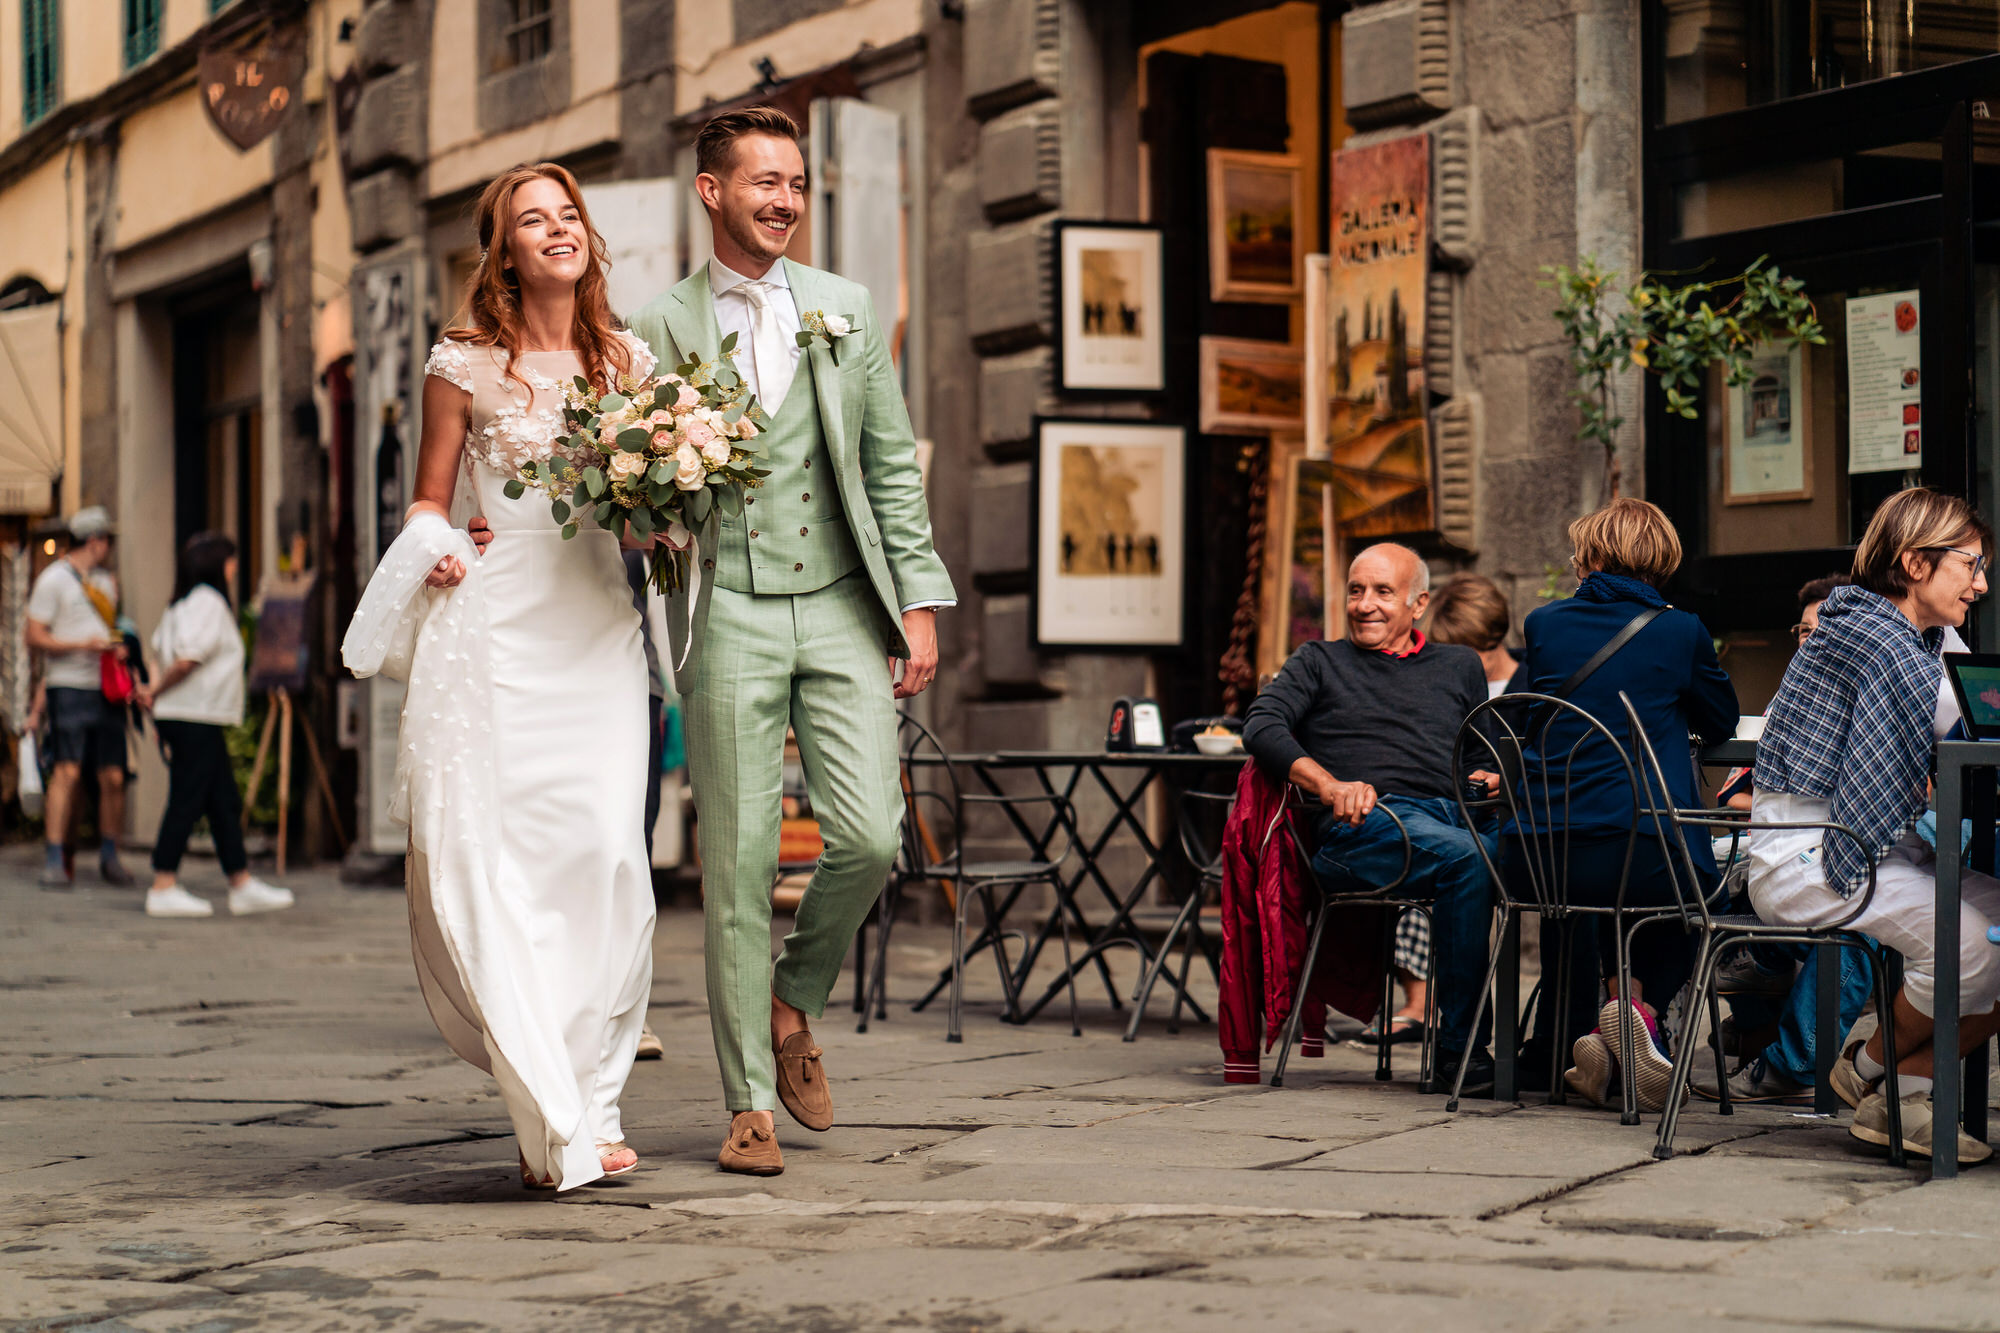 Trouwen onder de Toscaanse Zon in Cortona Italië, Selijn Fotografie trouwen in het buitenland, Trouwen in Toscane